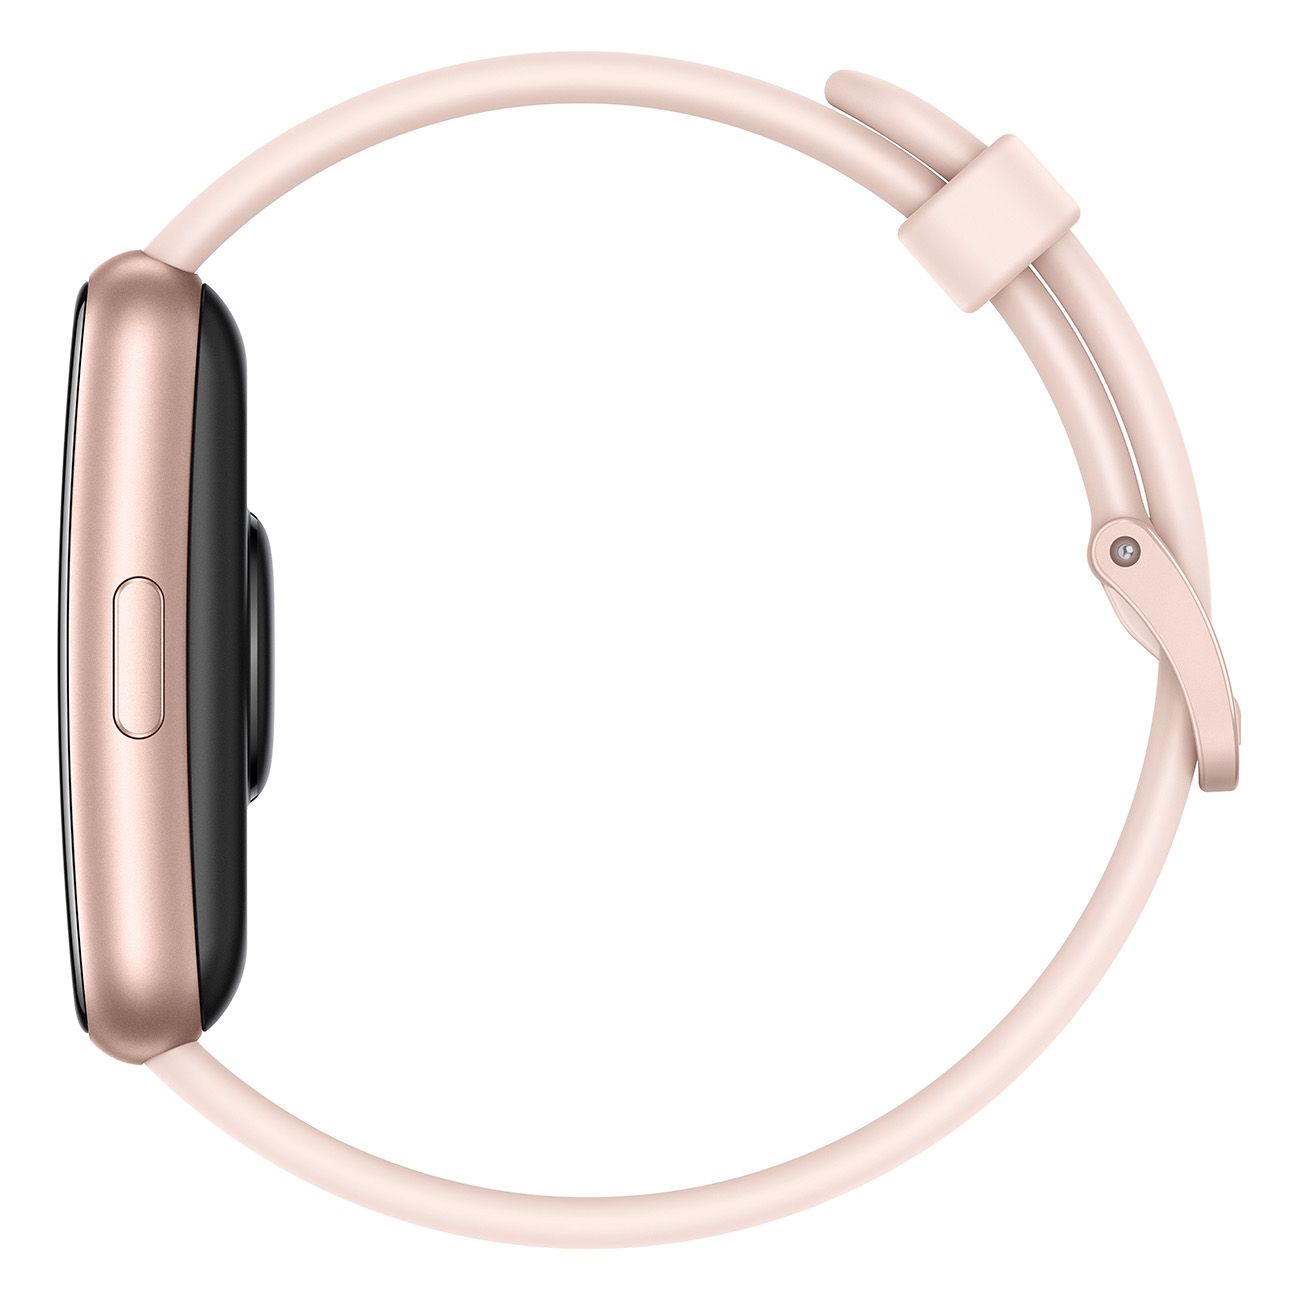 HUAWEI Watch Fit SE Pink Smartwatch Fitnesstracker Pulsuhr 4GB für iOS Android